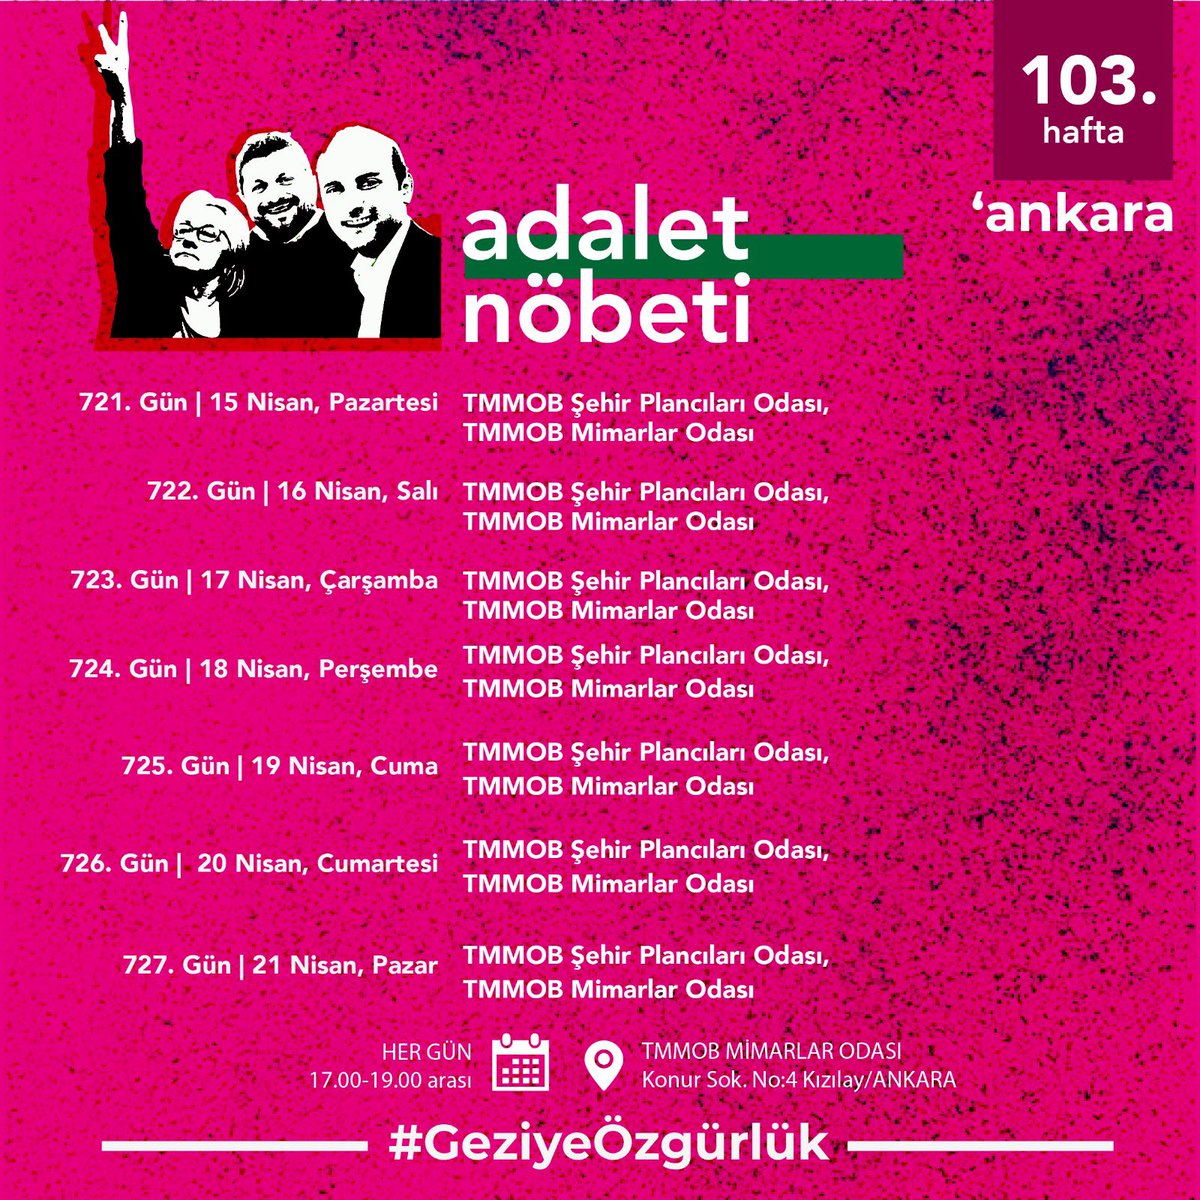 103. Hafta | Ankara Adalet Nöbeti’nin nöbet programı 🗓 Her gün ⏰ 17.00-19.00 📍 TMMOB Mimarlar Odası #GeziyeÖzgürlük #GeziyiSavunuyoruz